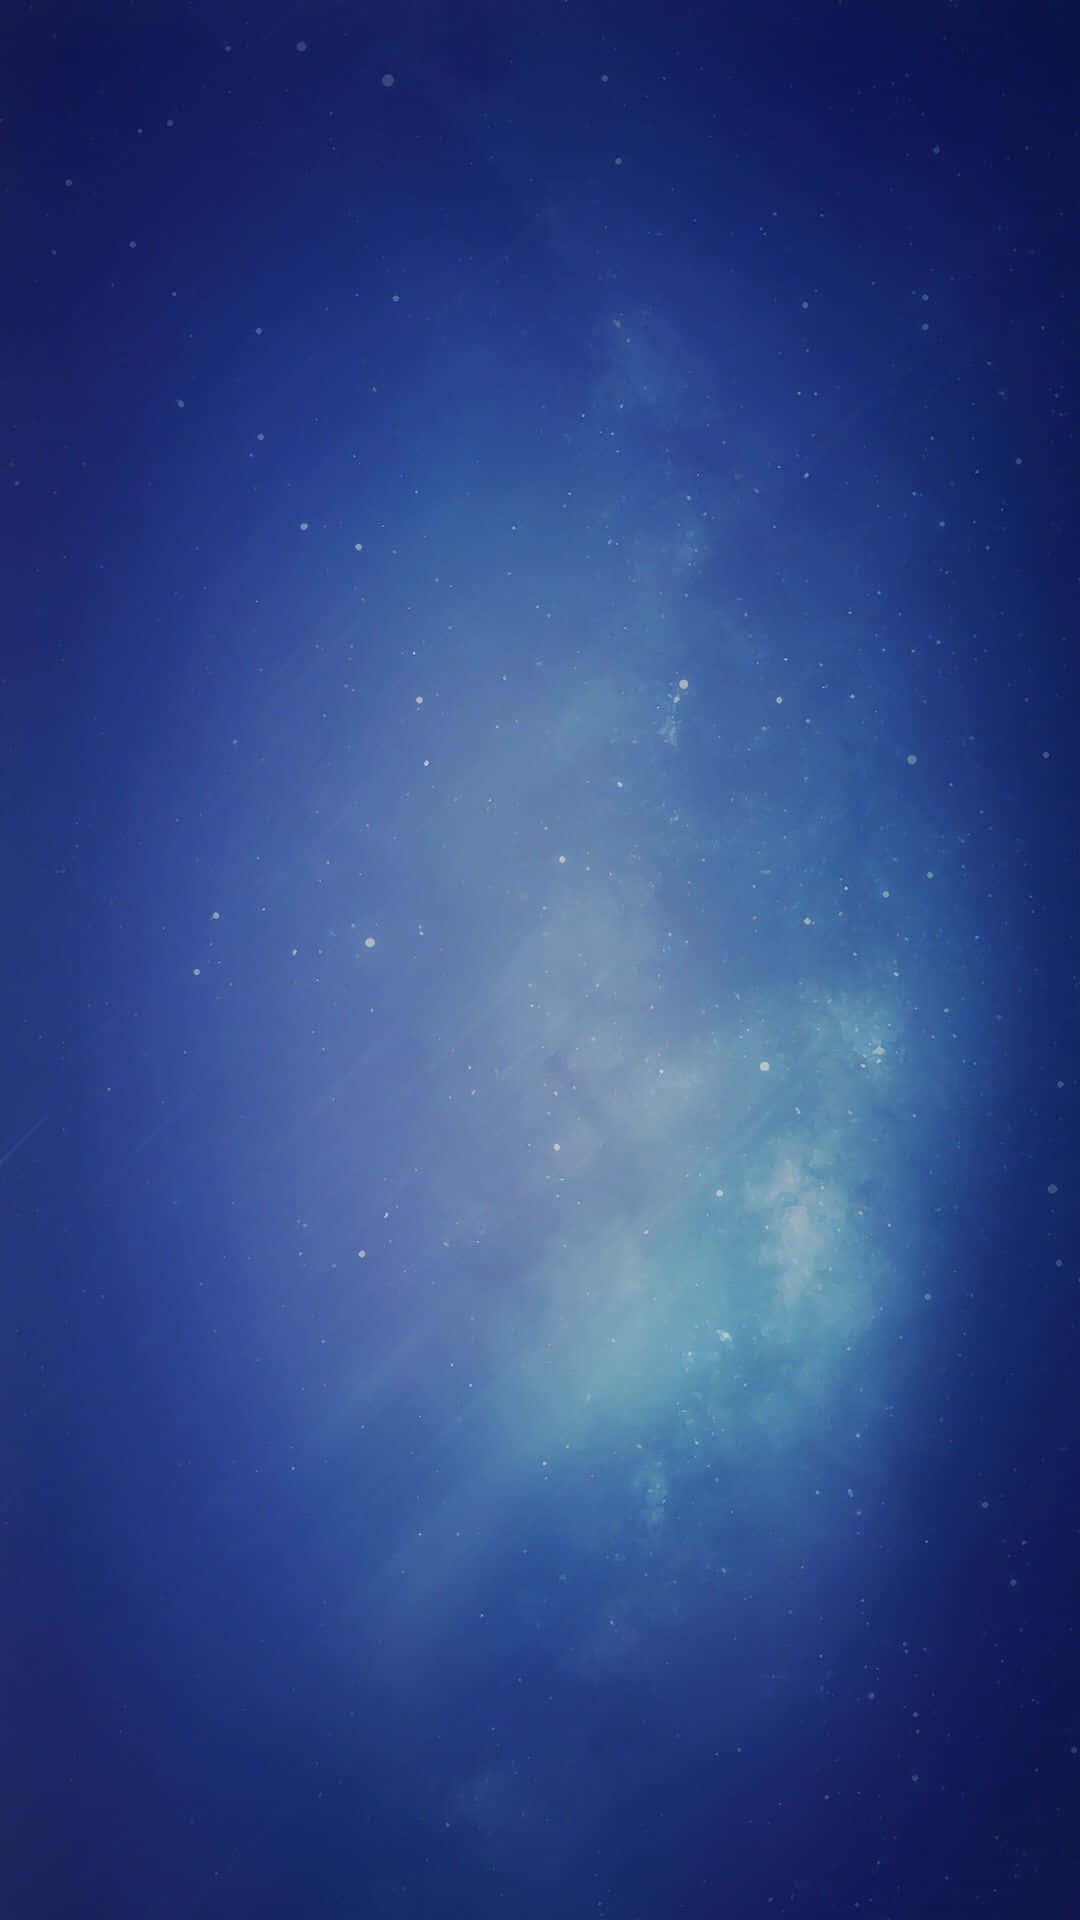 Nebulosade Color Morado Claro En El Universo Del Iphone. Fondo de pantalla